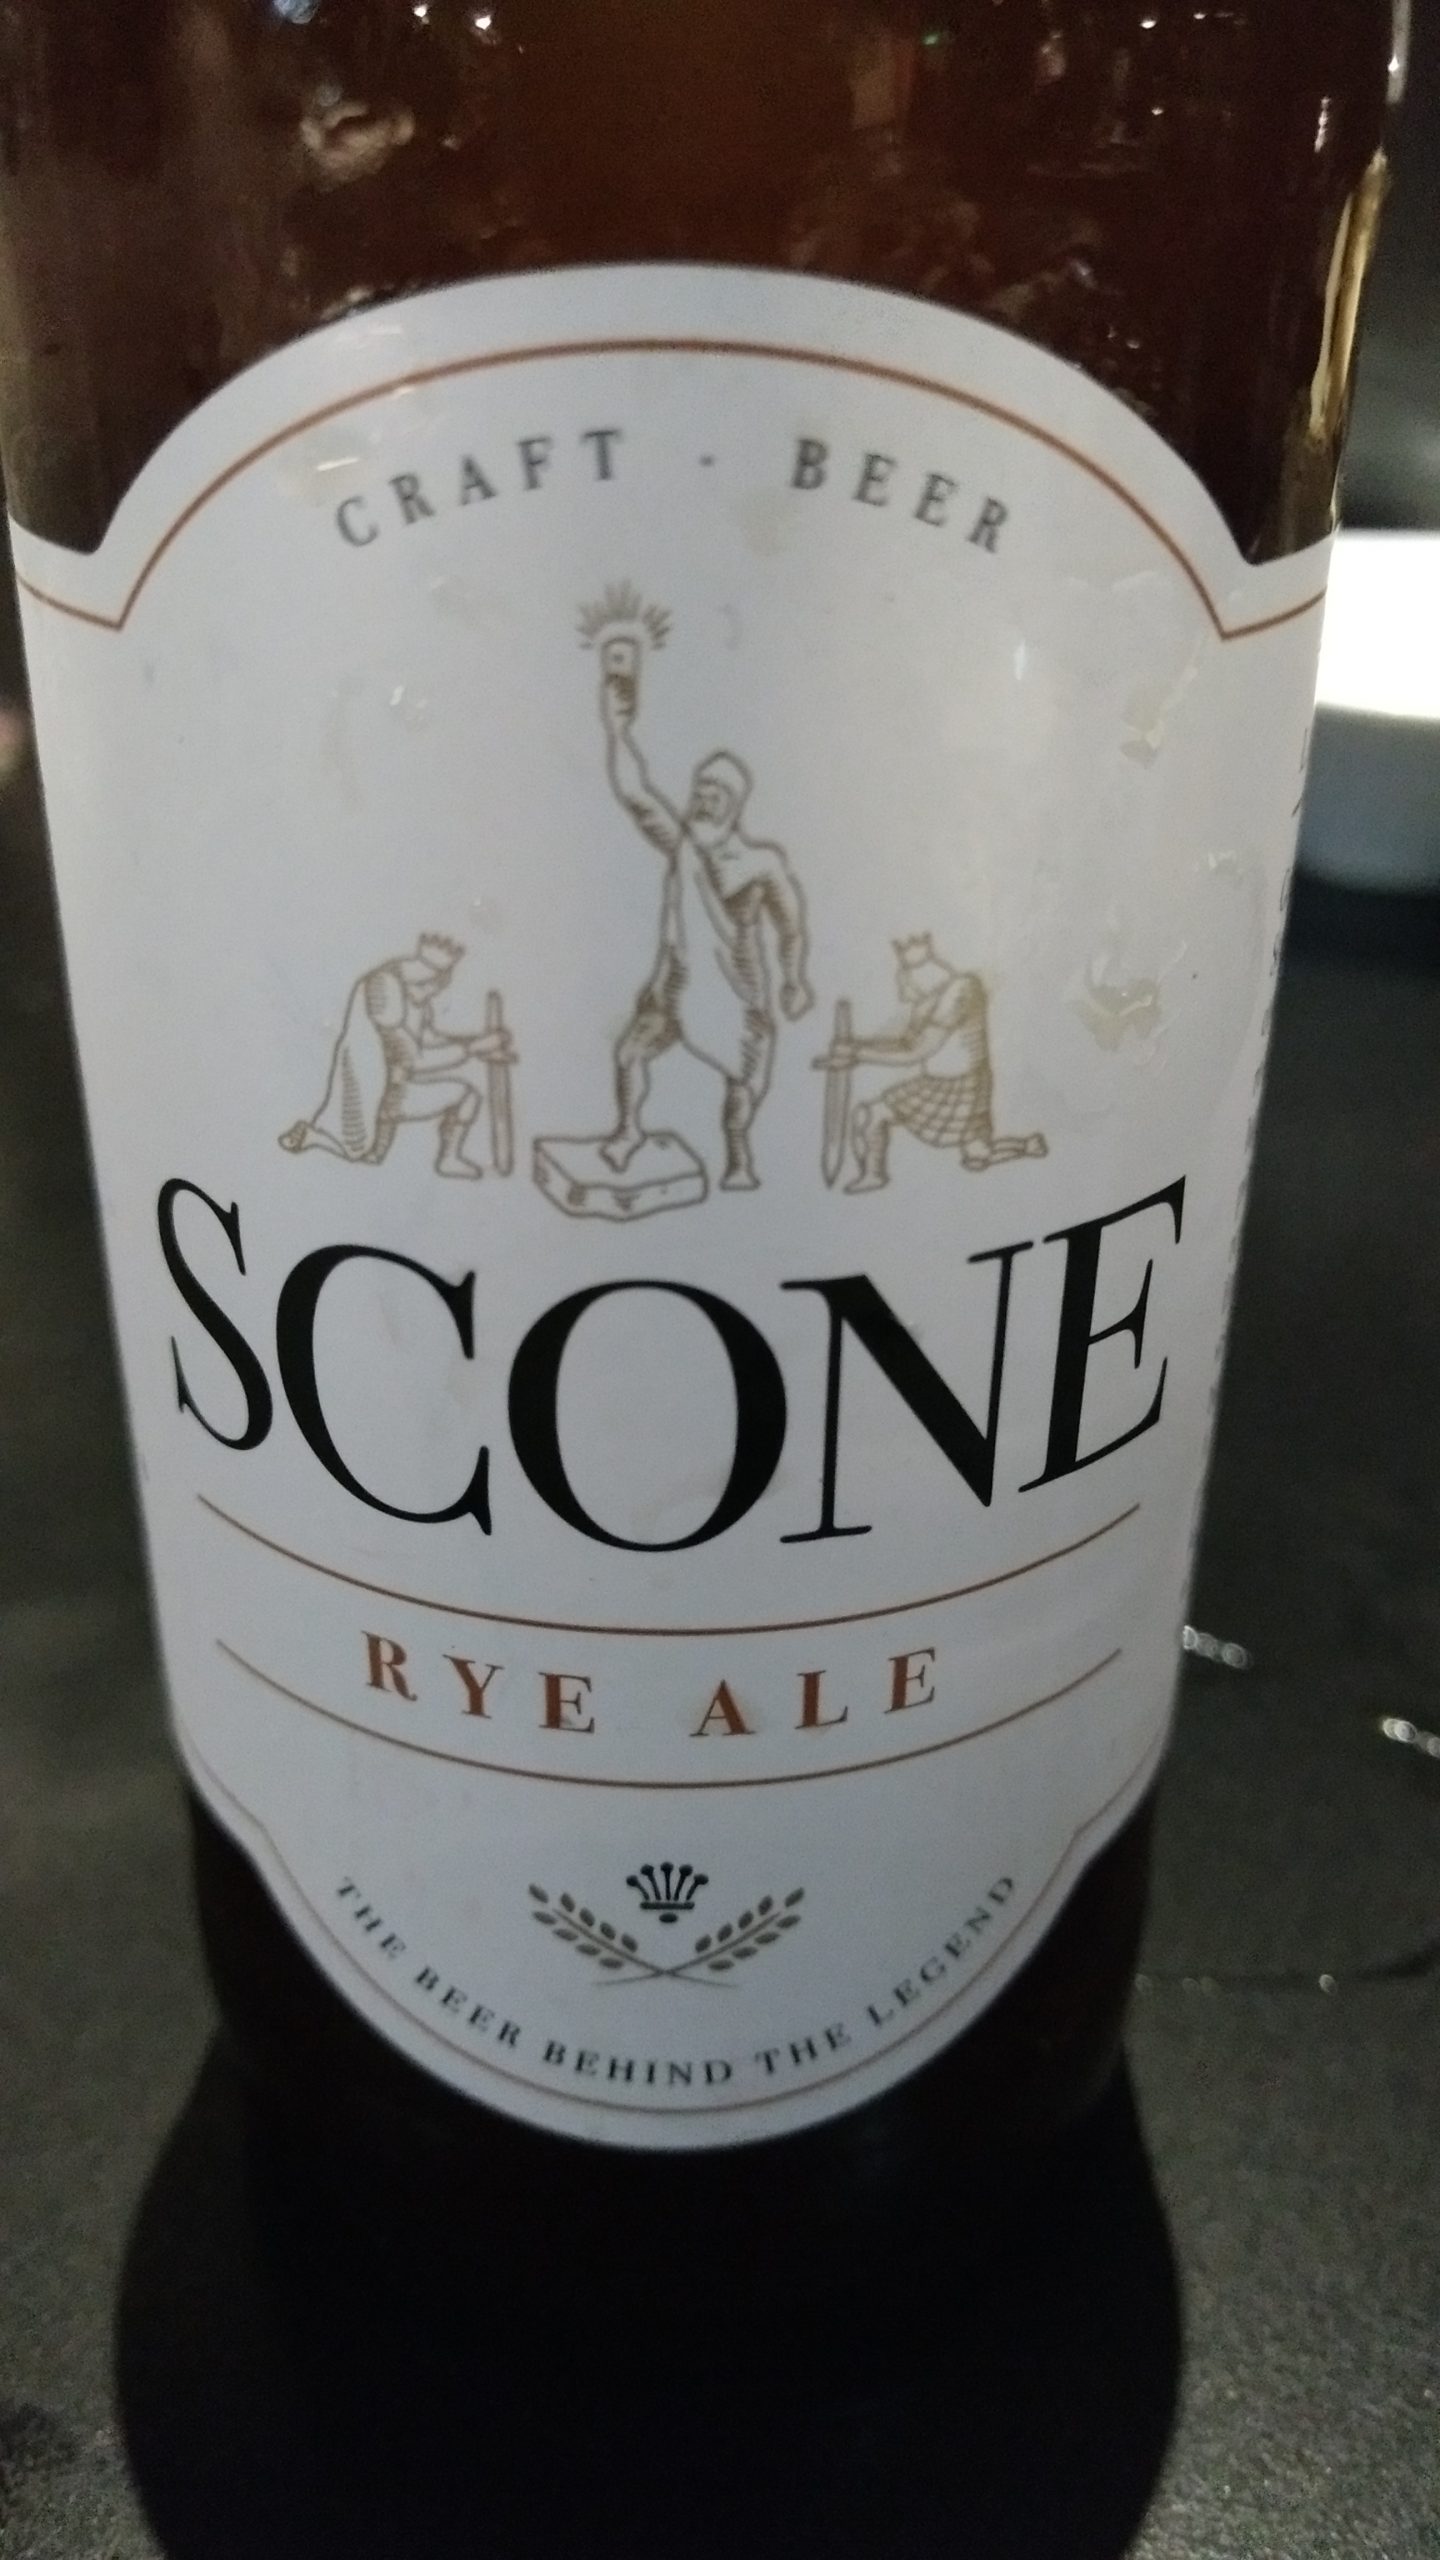 Cerveza artesana Scone Rye Ale